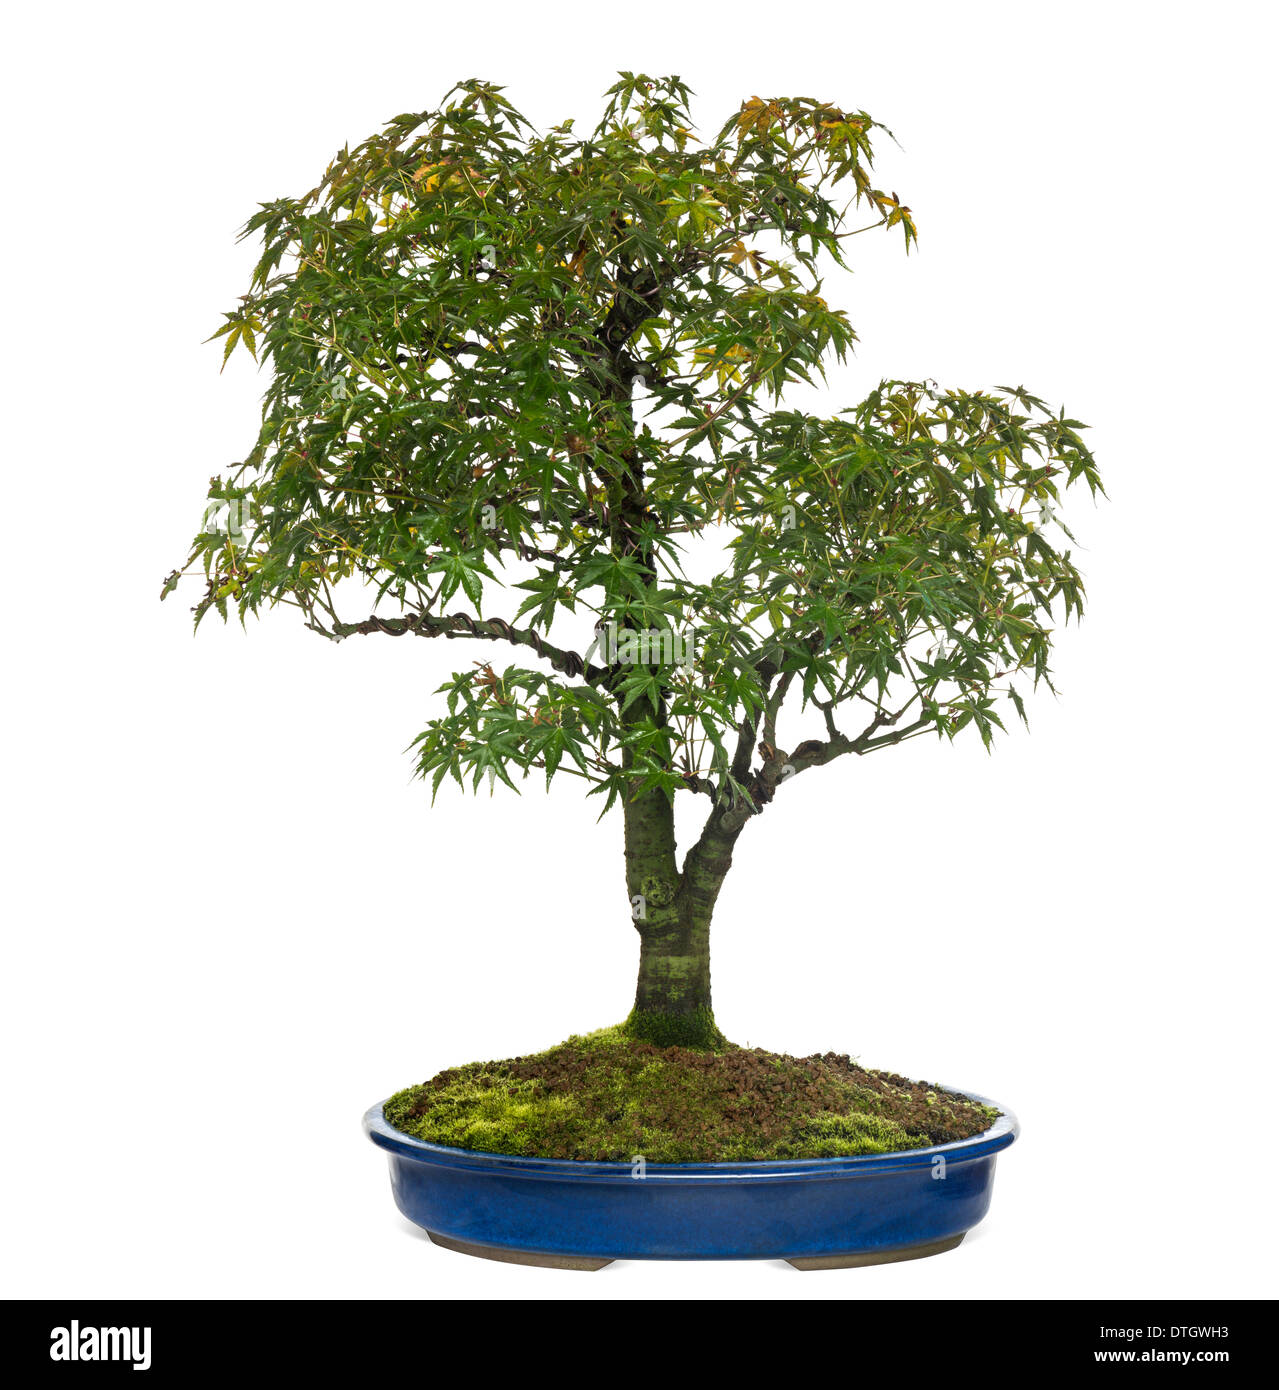 Acer-Bonsai-Baum, vor weißem Hintergrund Stockfoto